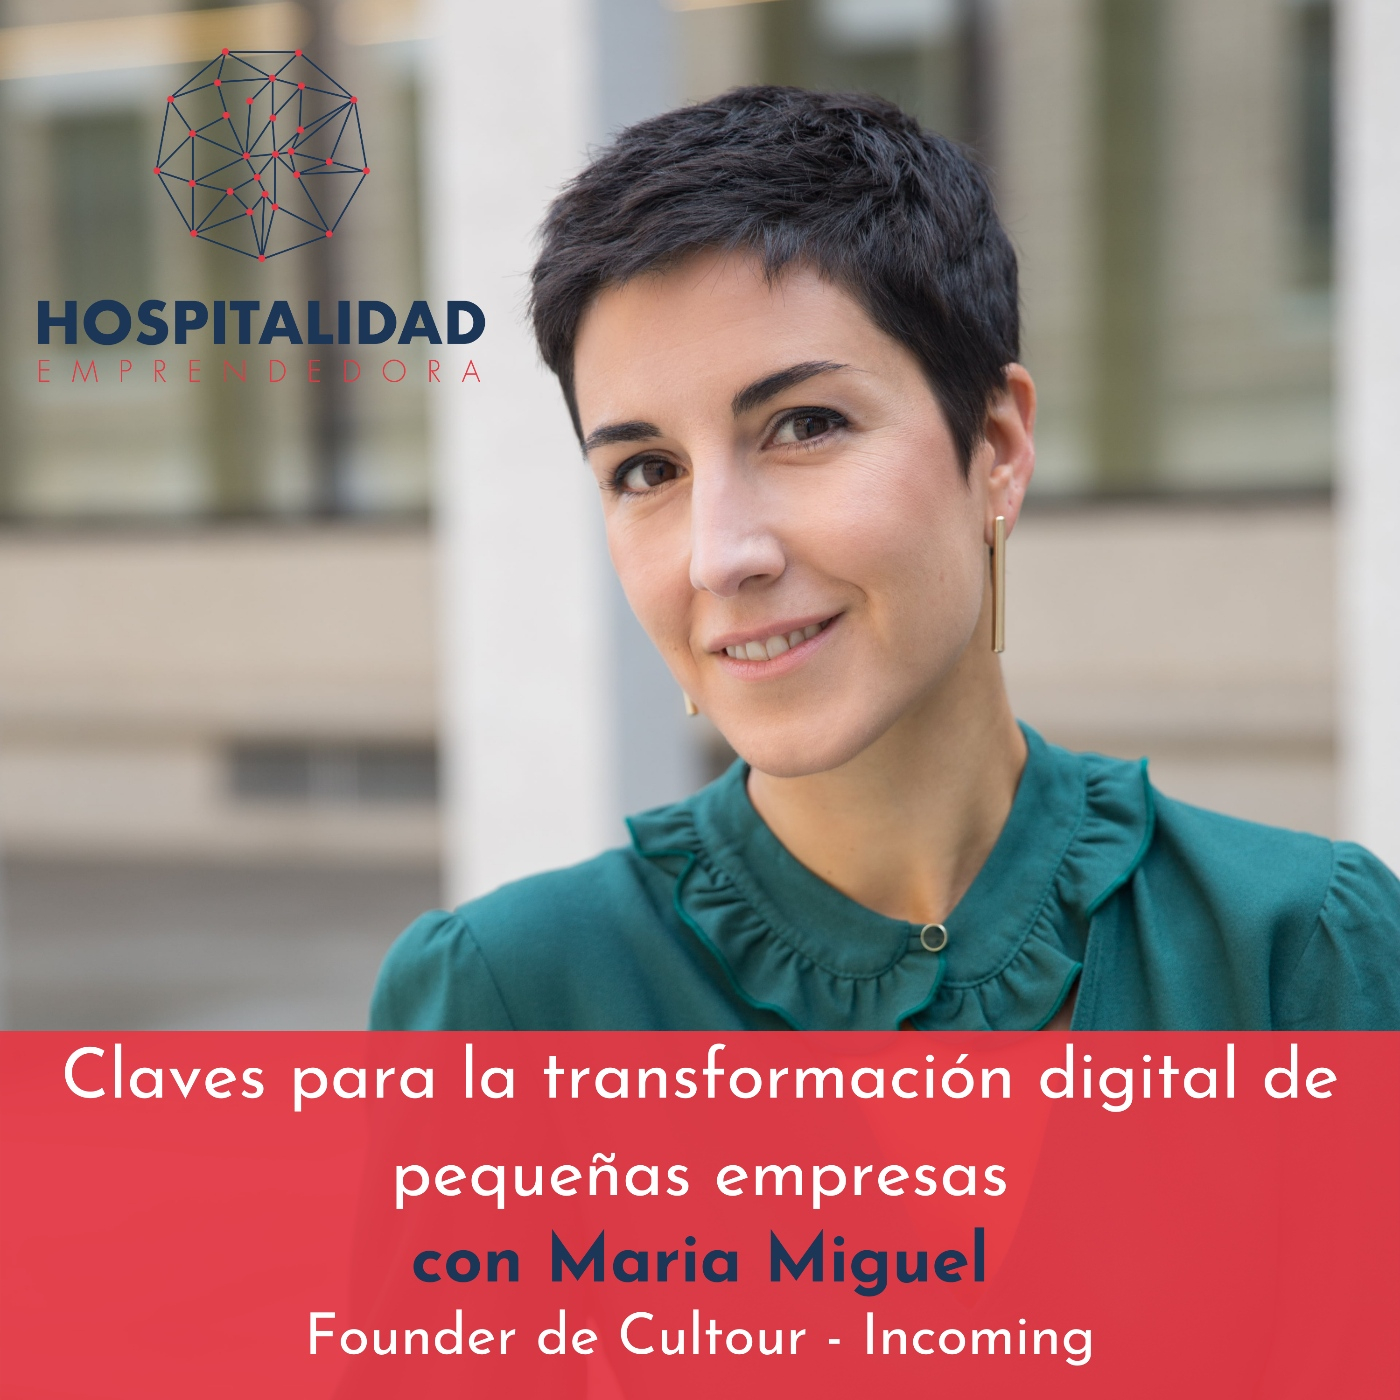 Claves para la transformación digital de PYMES en el sector turístico con Maria Miguel. Temp 6 Episodio 2